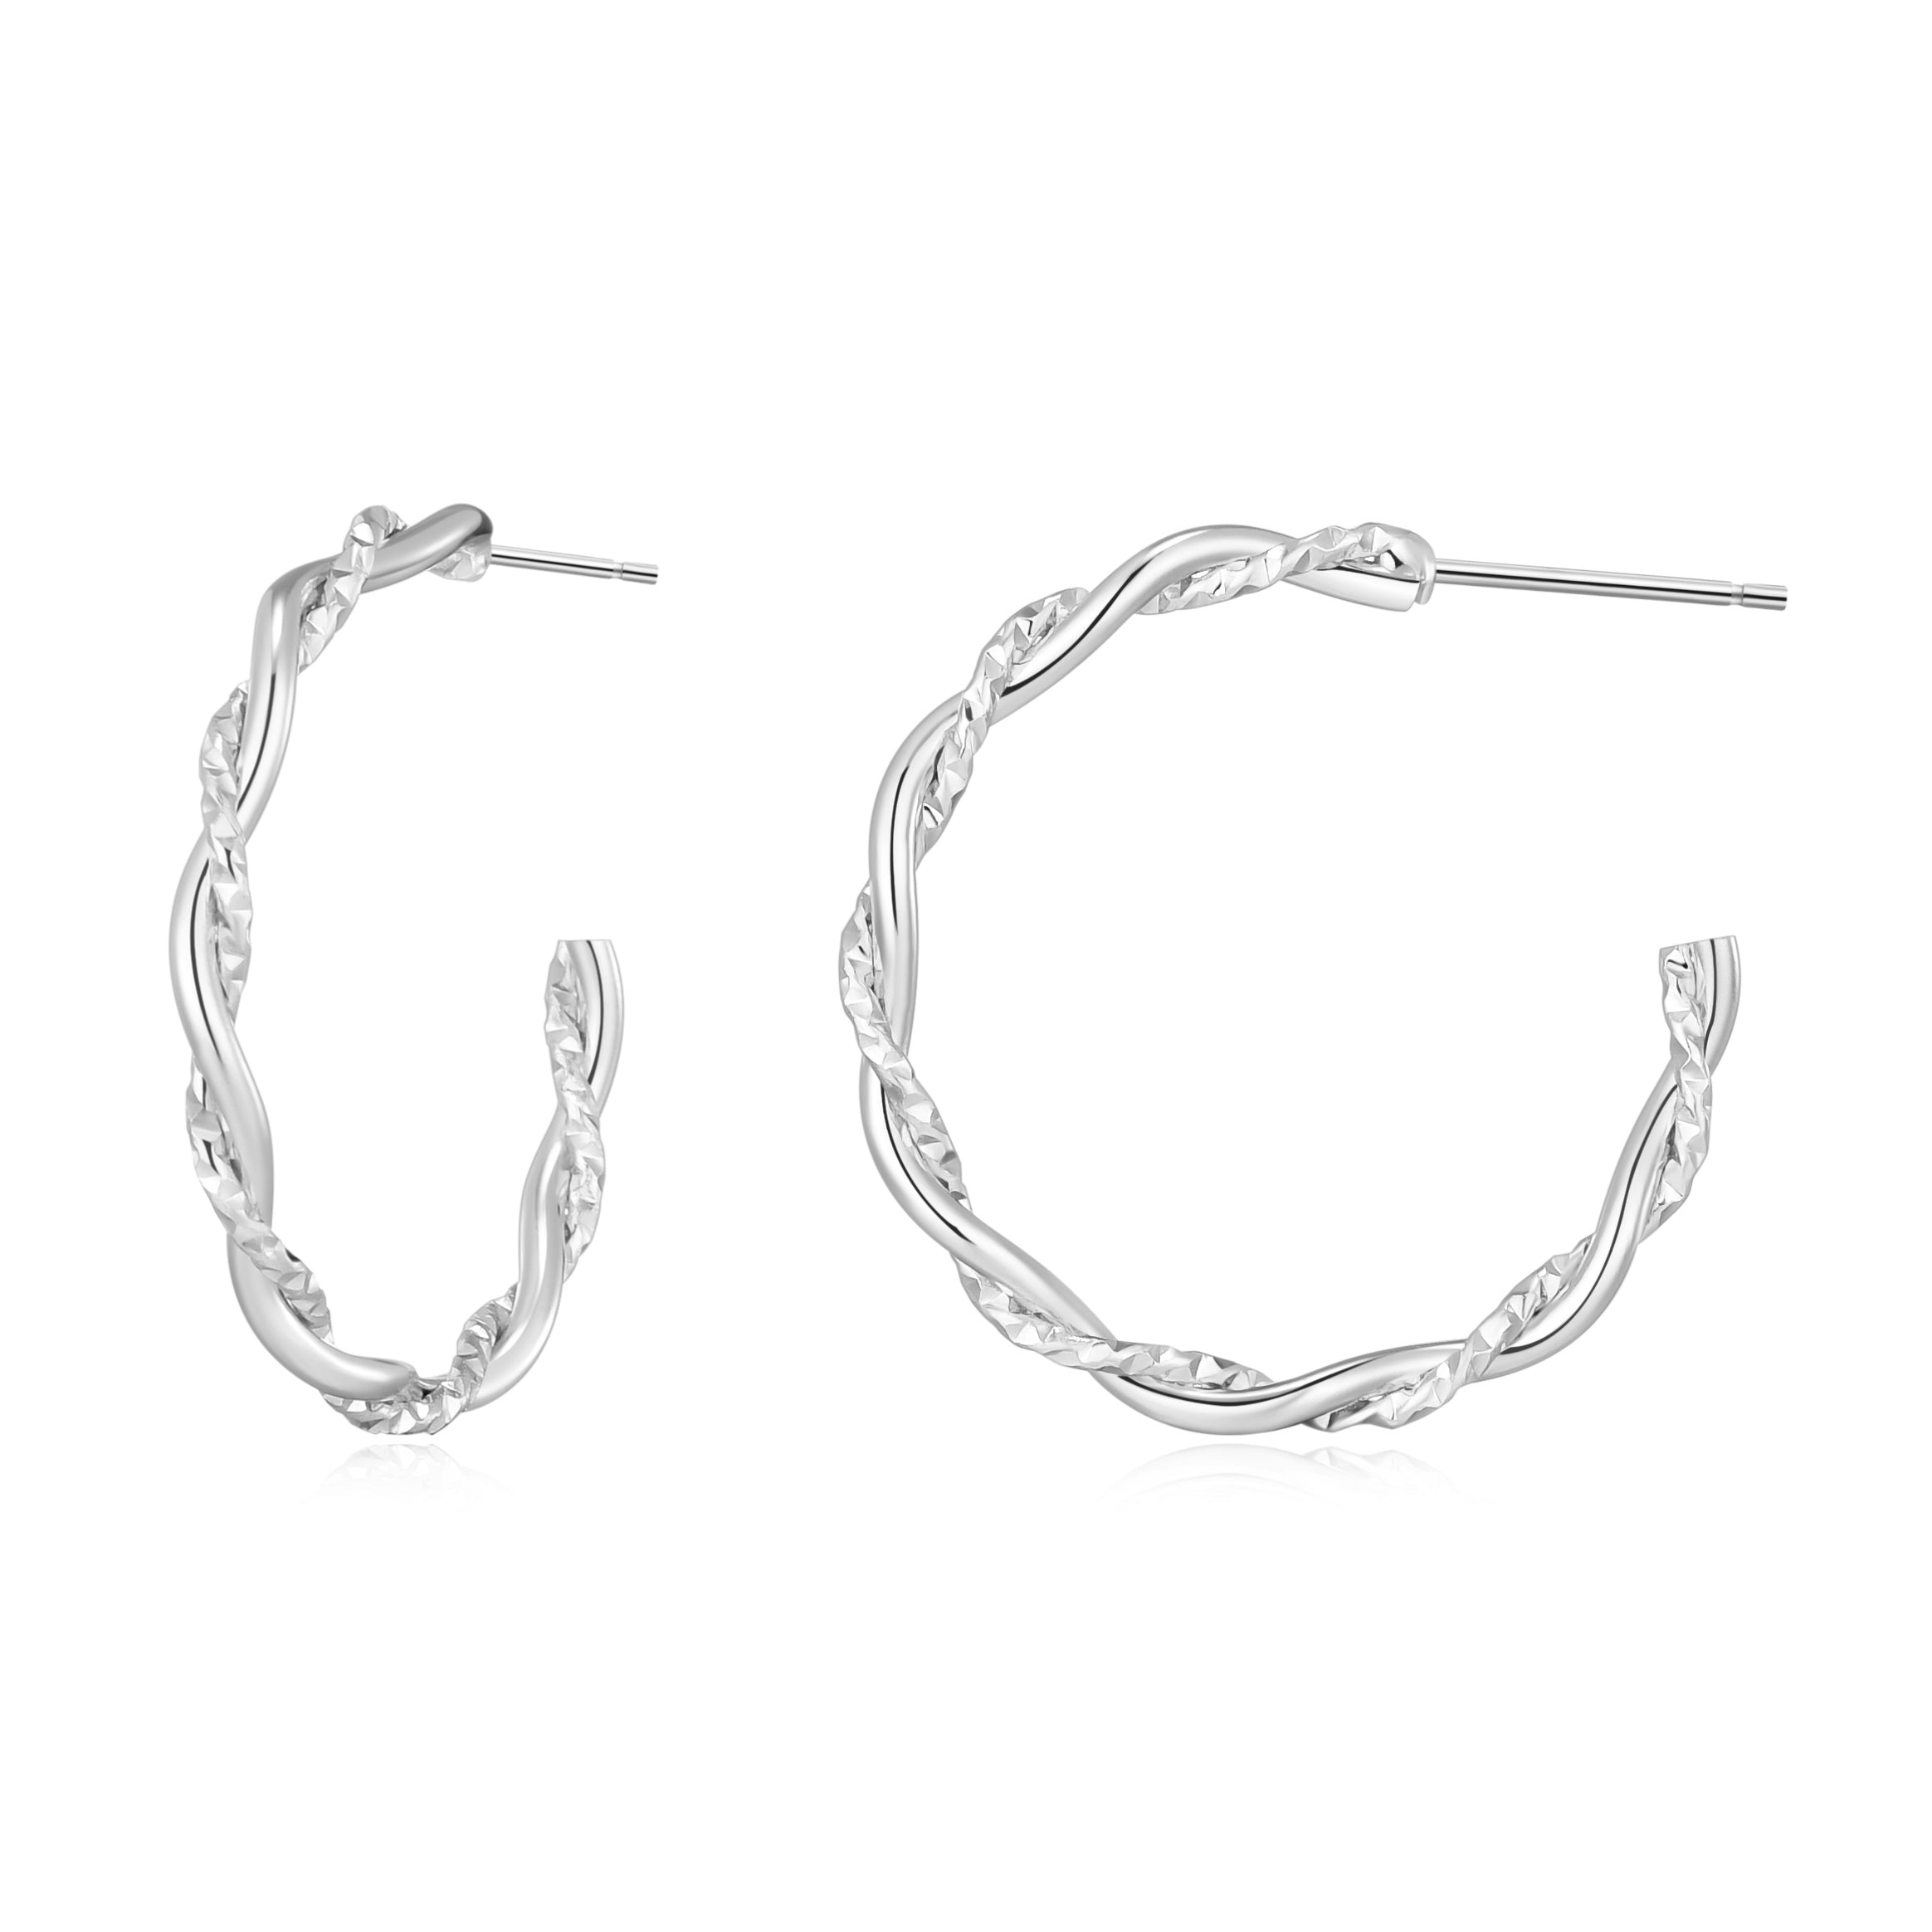 Silver Plated 30mm Twisted Diamond Cut Hoop Earrings by Philip Jones Jewellery